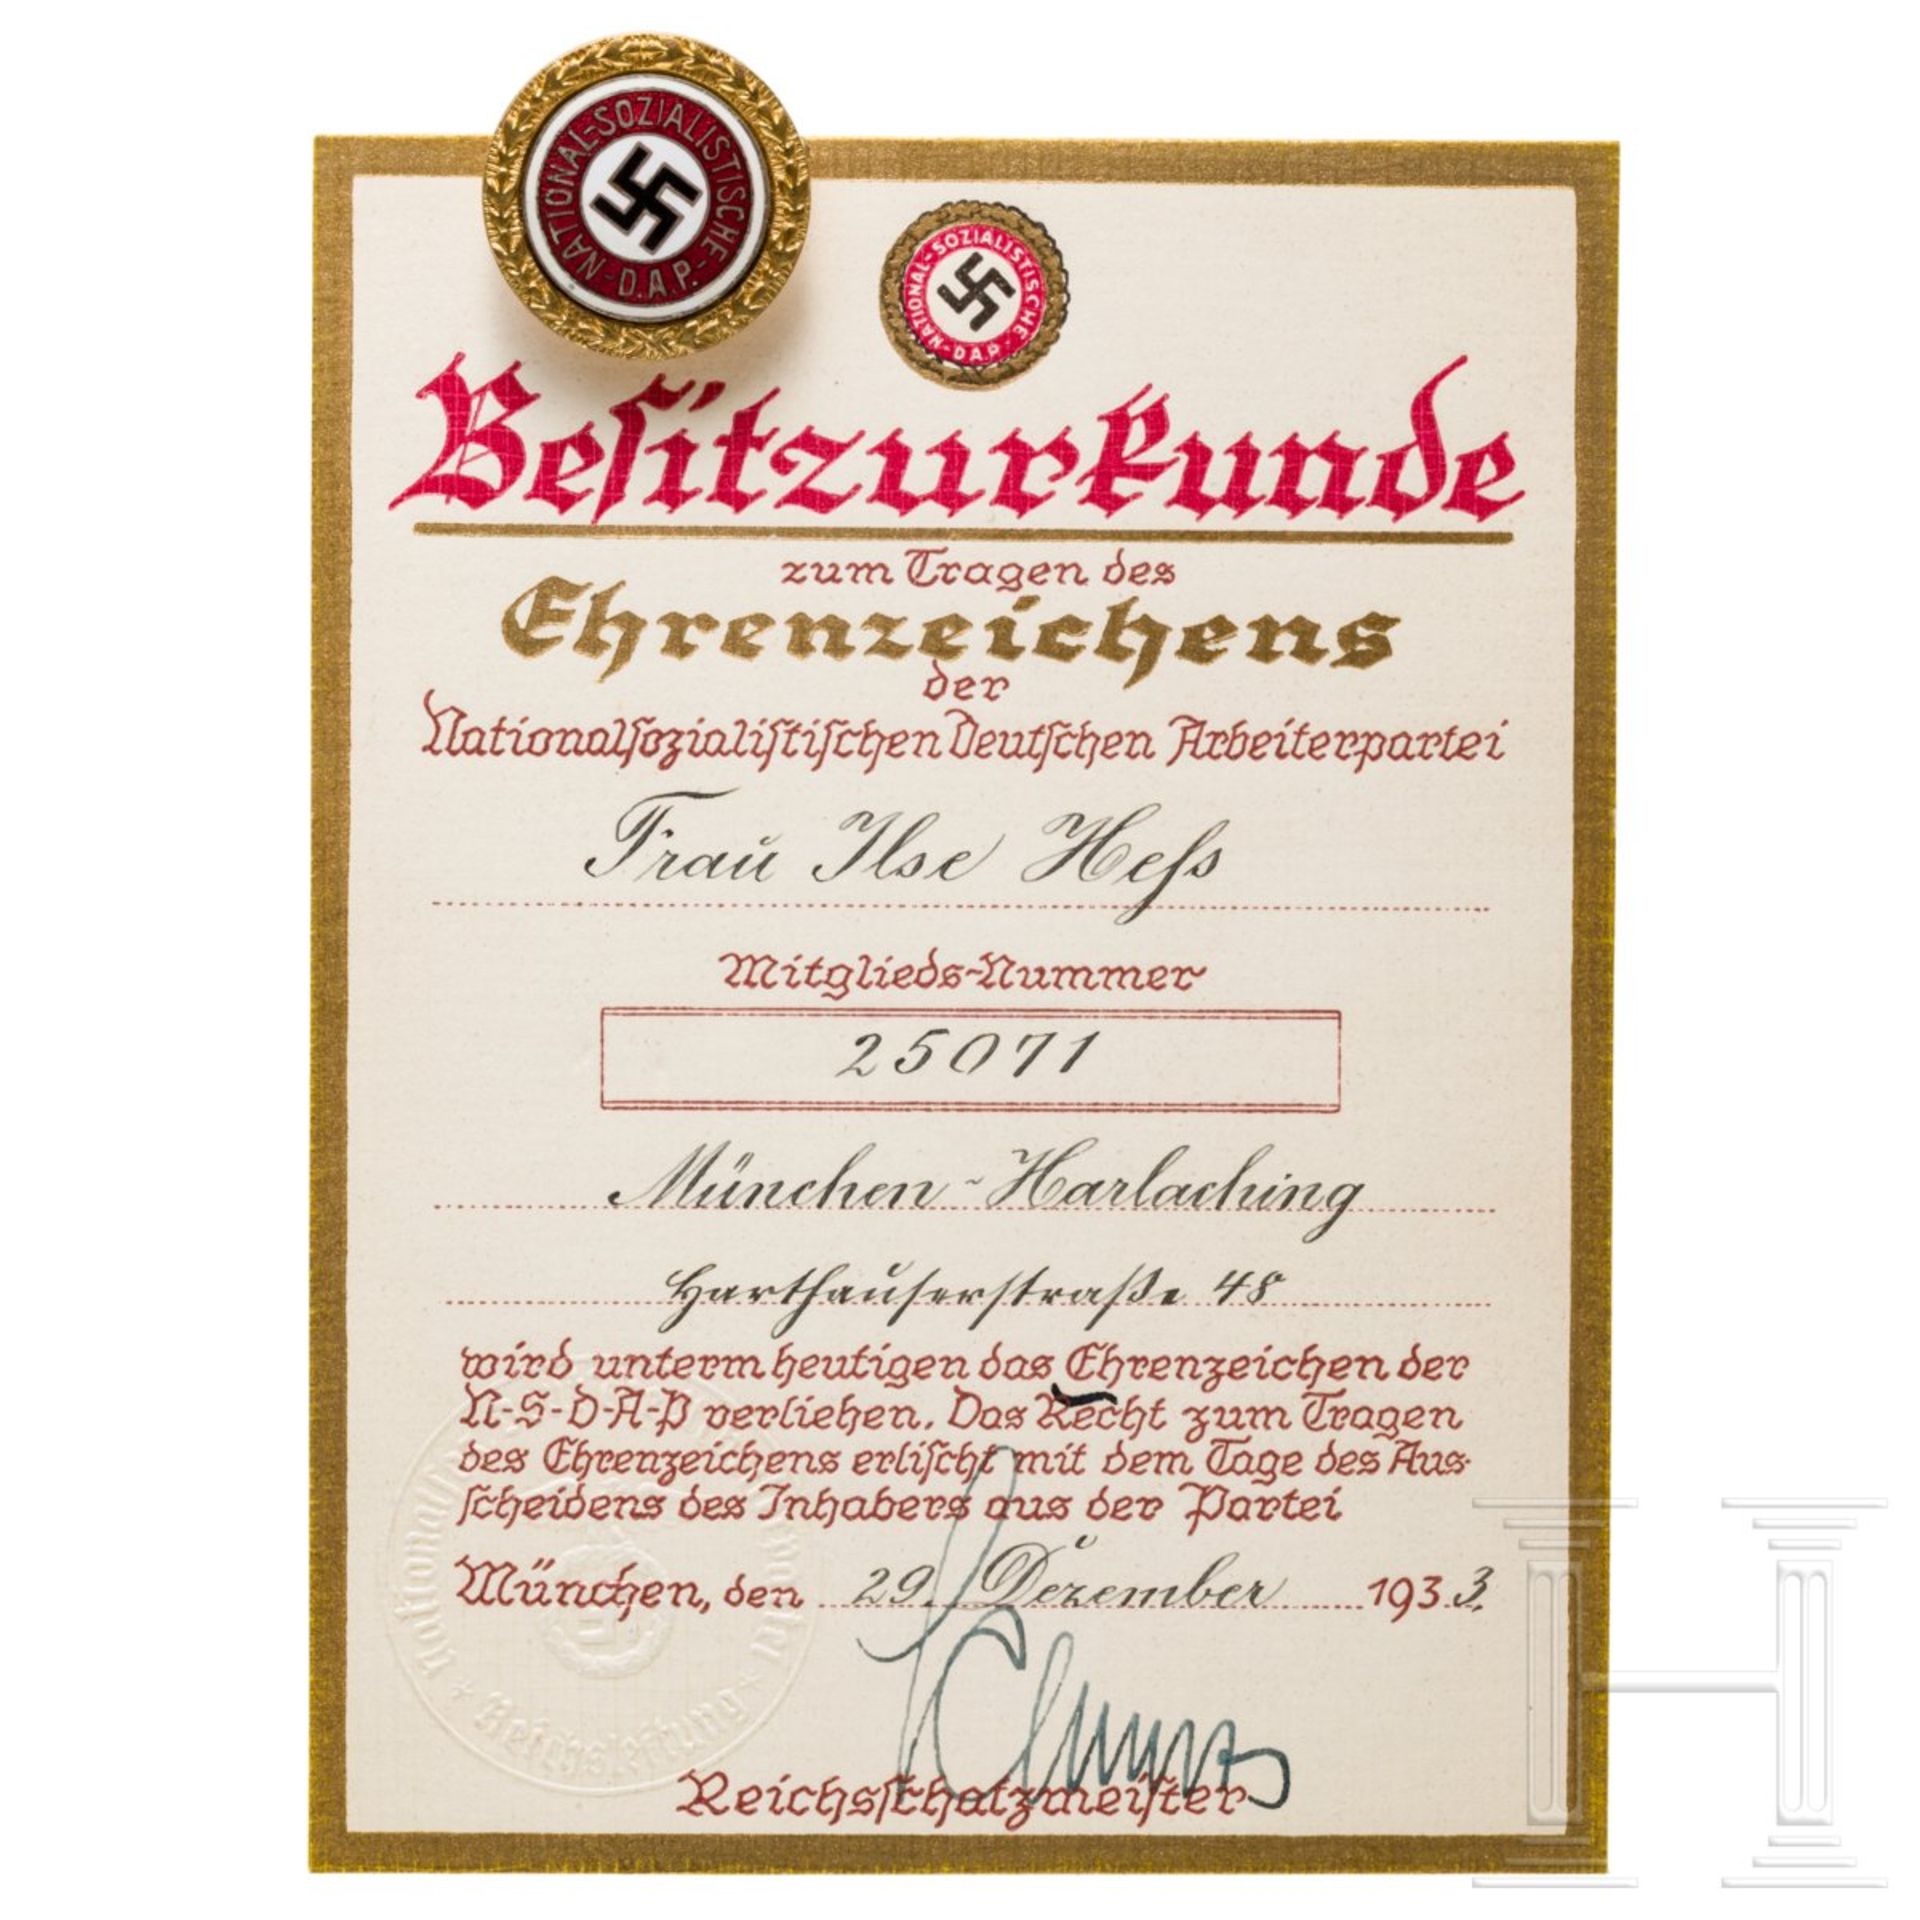 <de>Ilse Heß – Goldenes Ehrenzeichen der NSDAP mit Besitzurkunde<br>Das Goldenes Ehrenzeichen in der